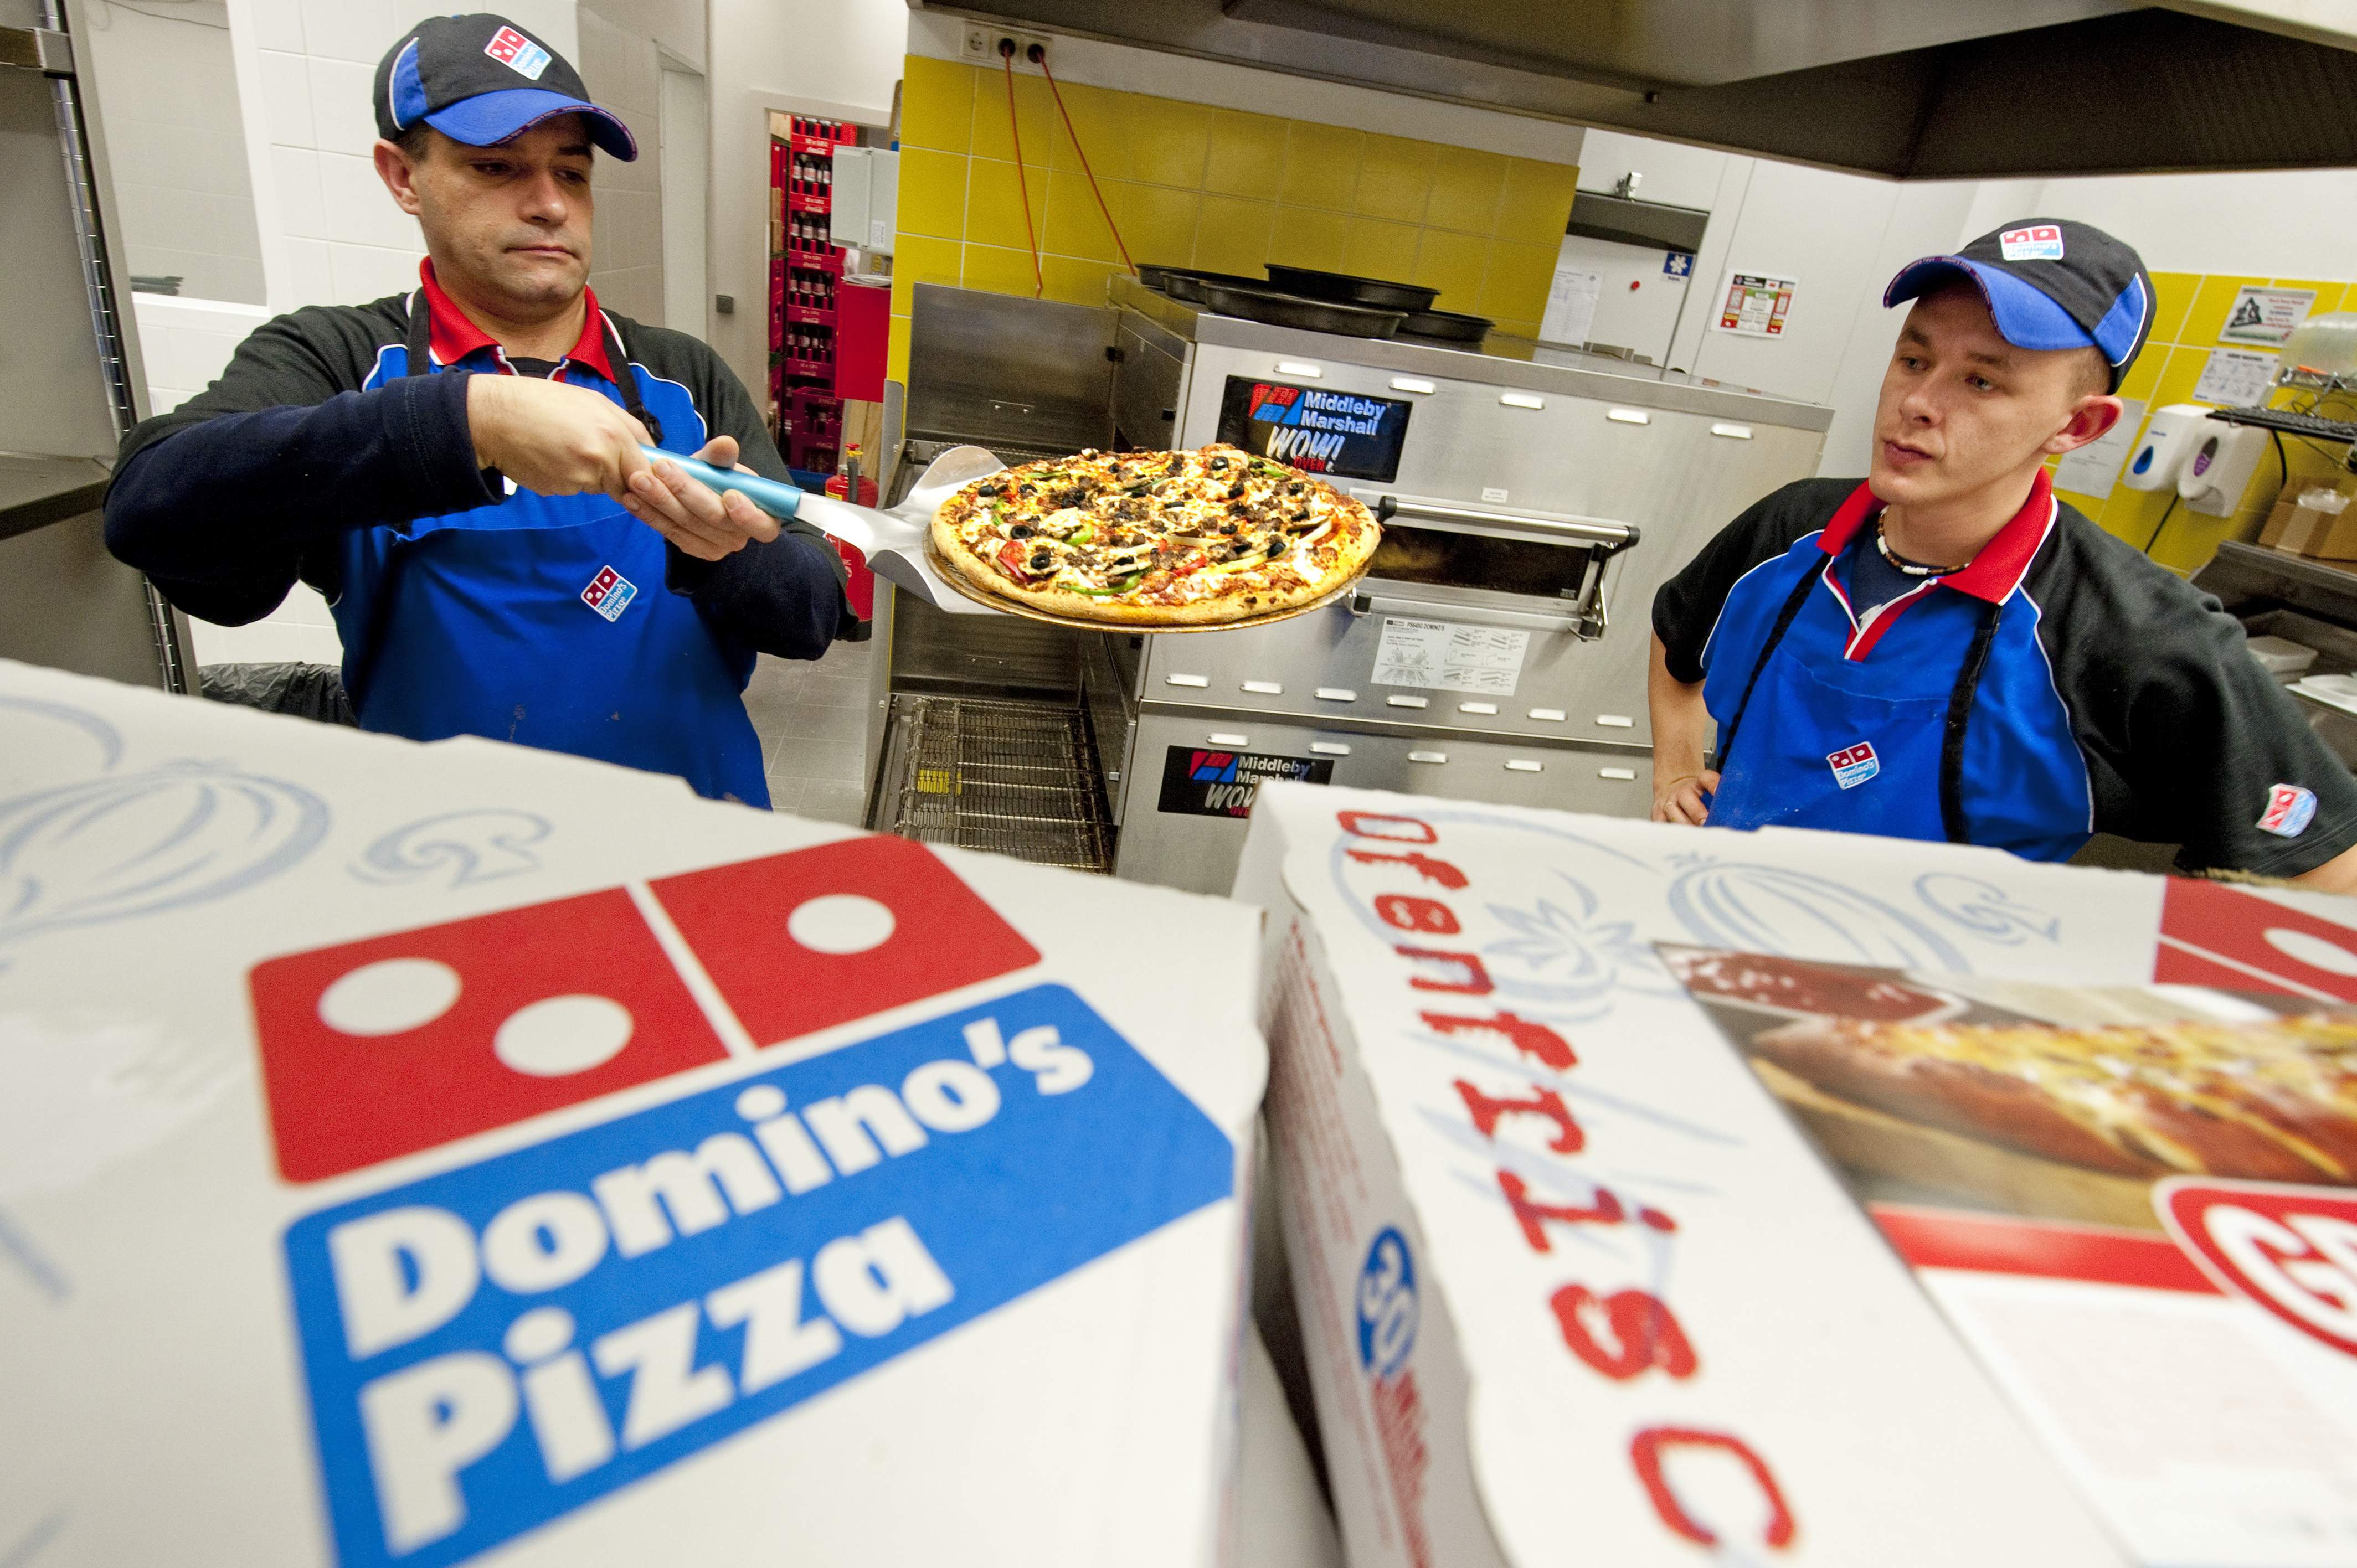 Domino's pizza aplica la IA para predecir las pizzas que quieren sus clientes